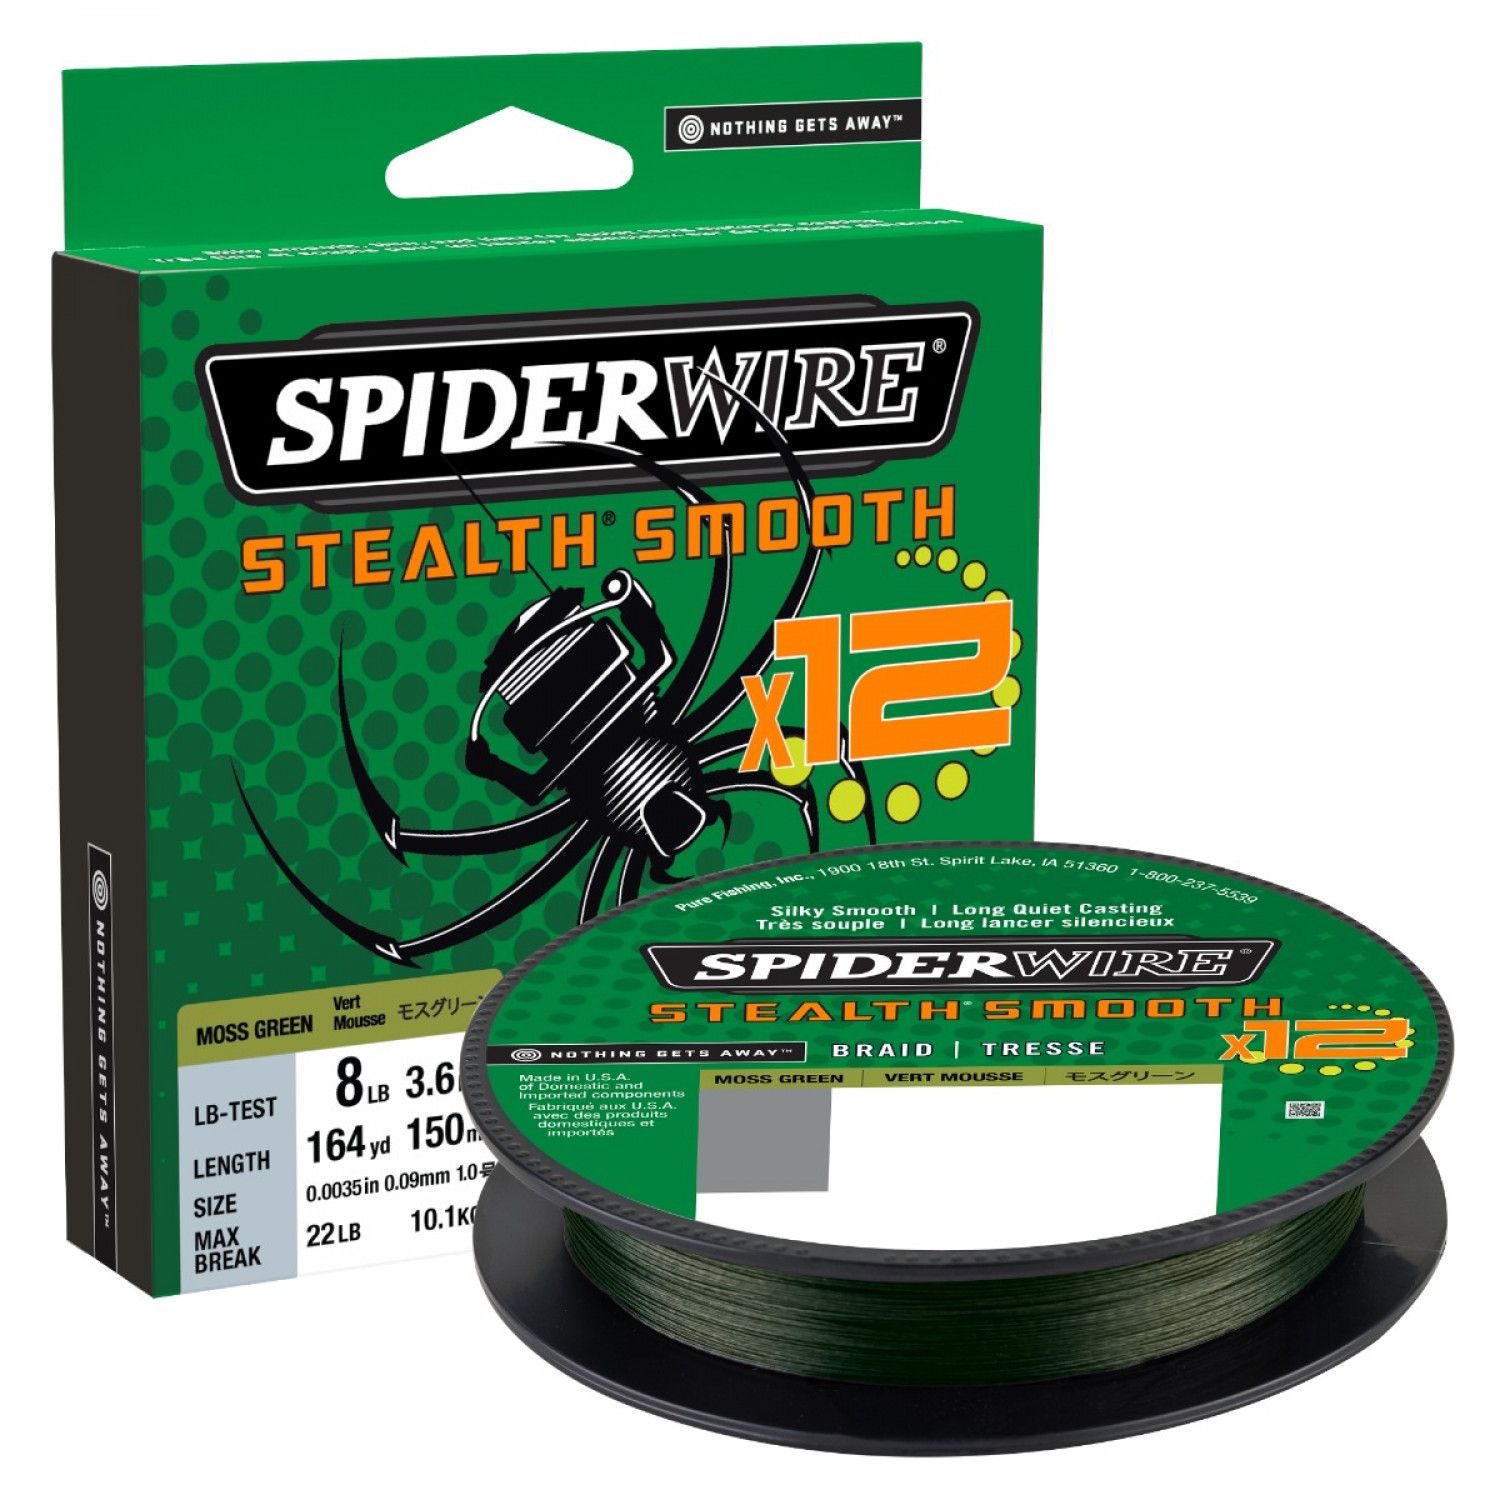 SPIDERWIRE SpiderWire Stealth braided fishing line mossgreen 150